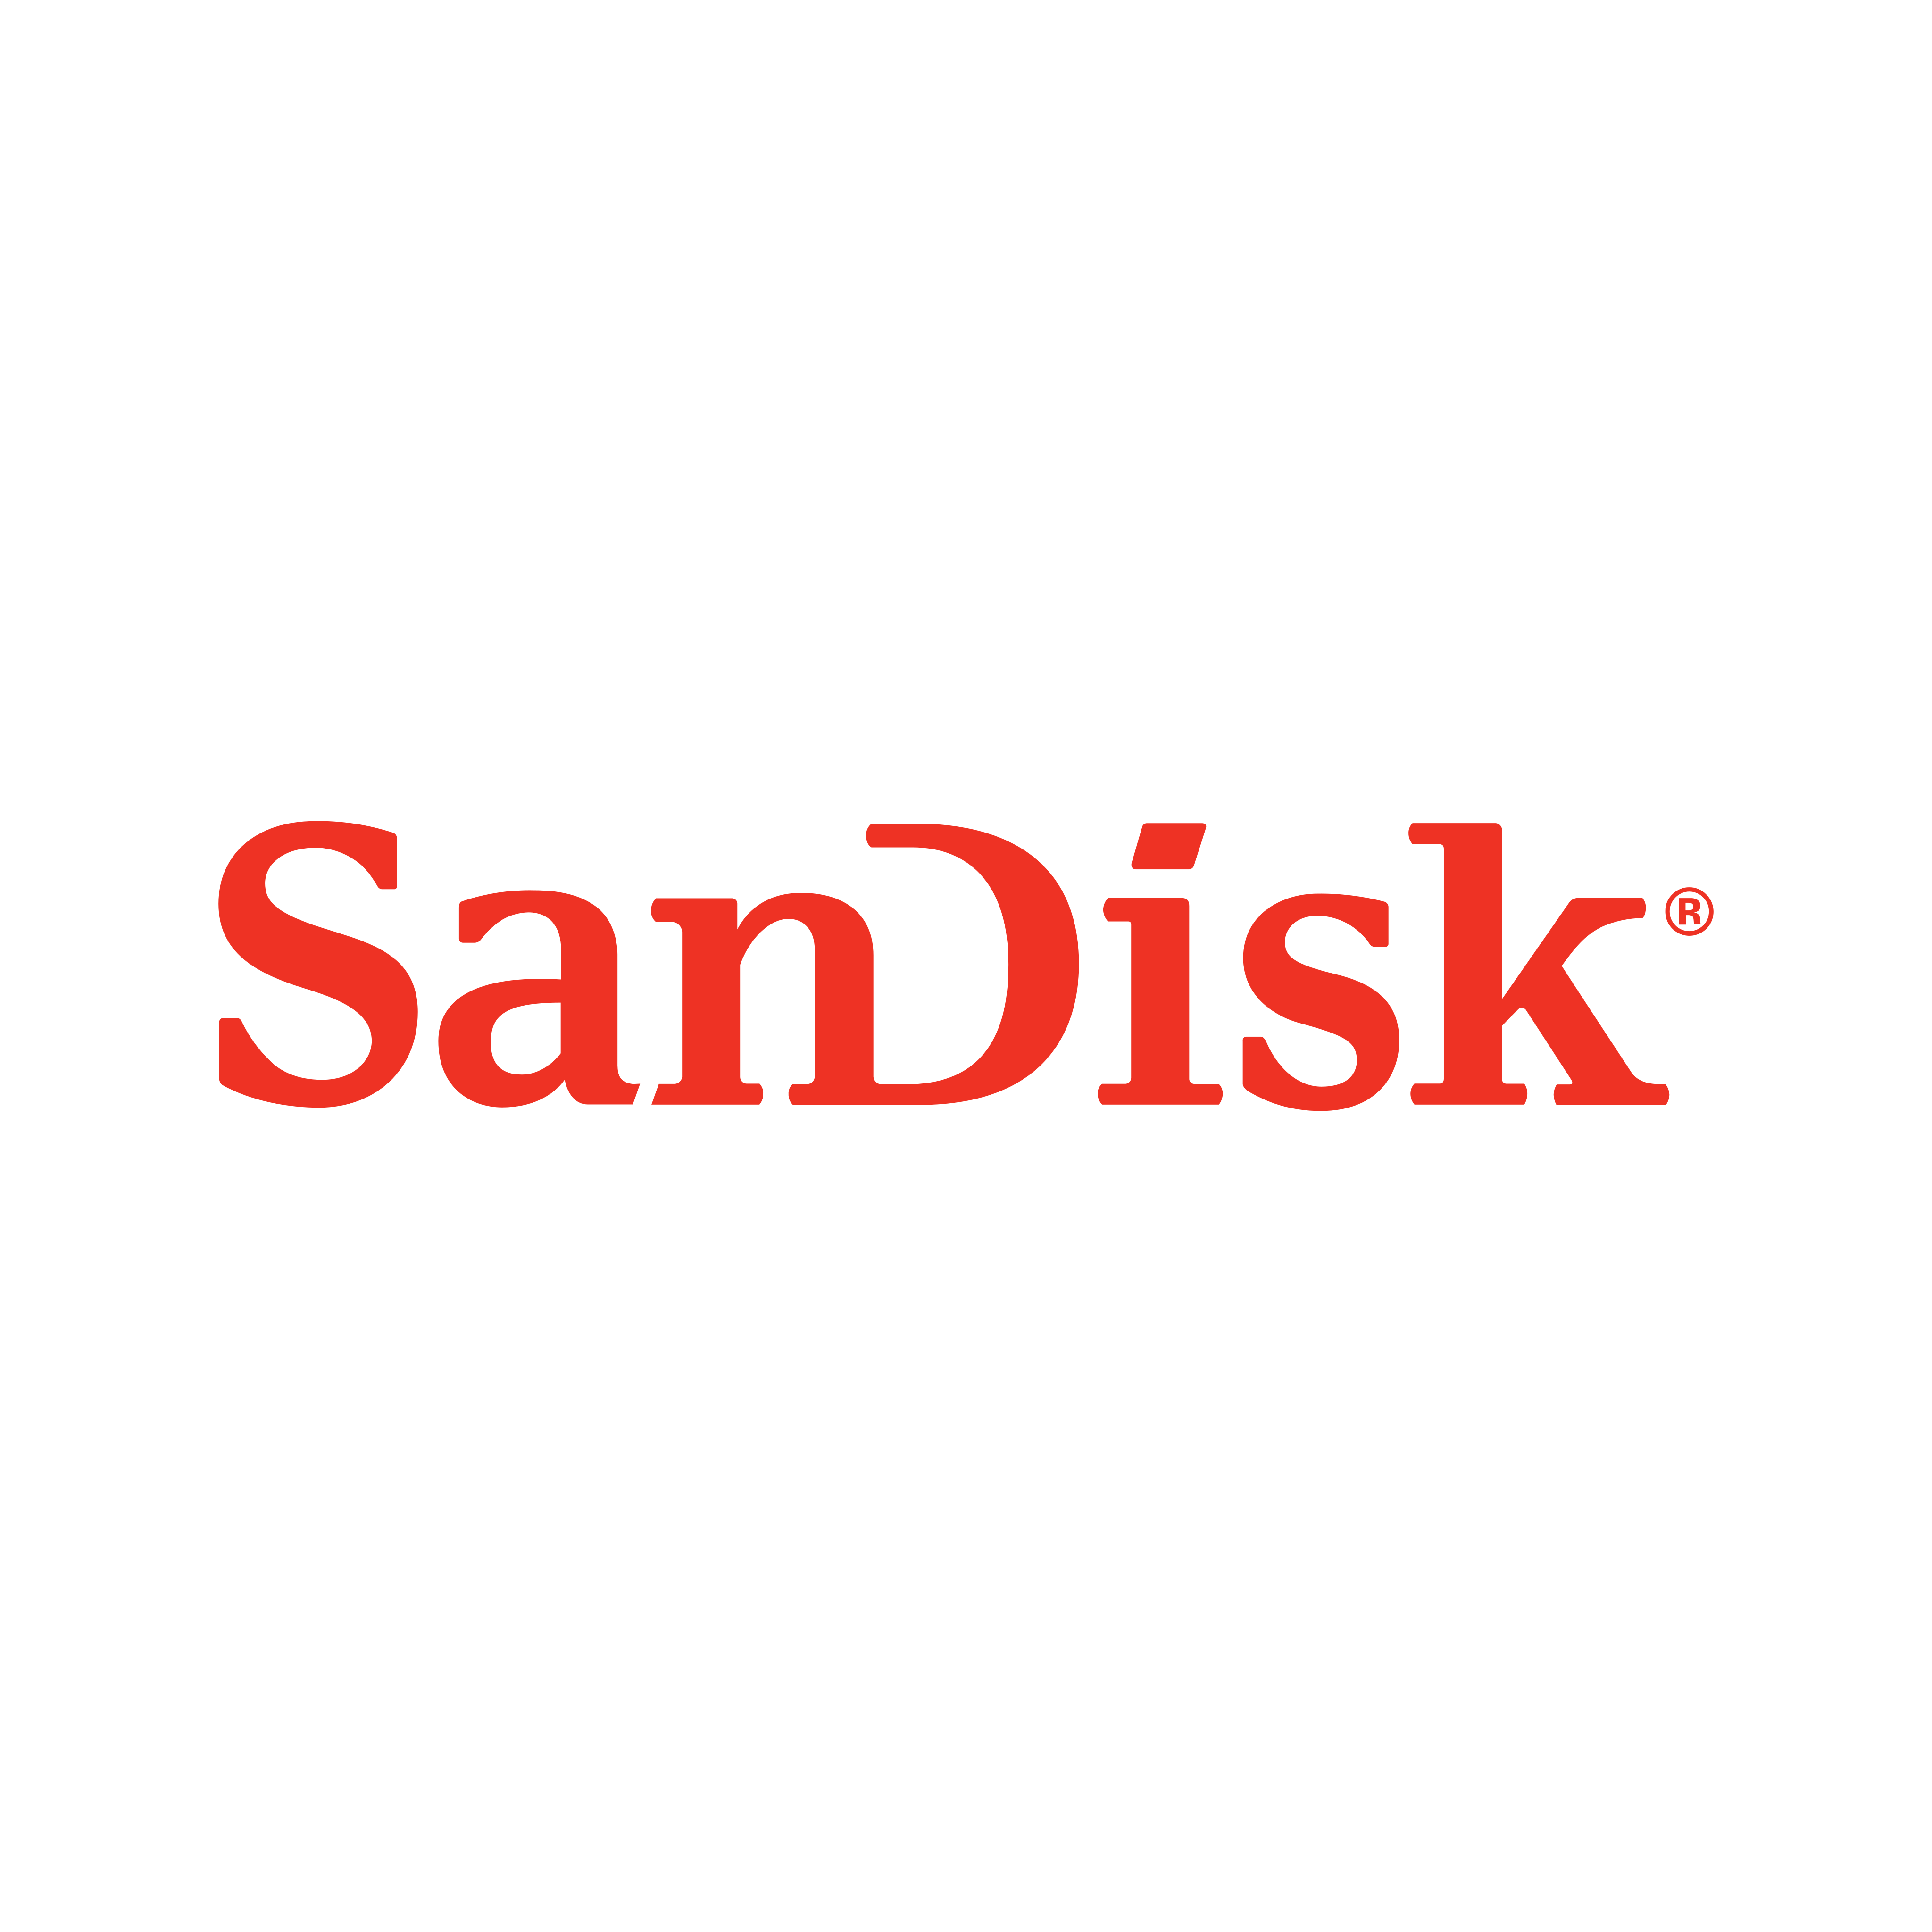 Logo Sandisk Png - KibrisPDR